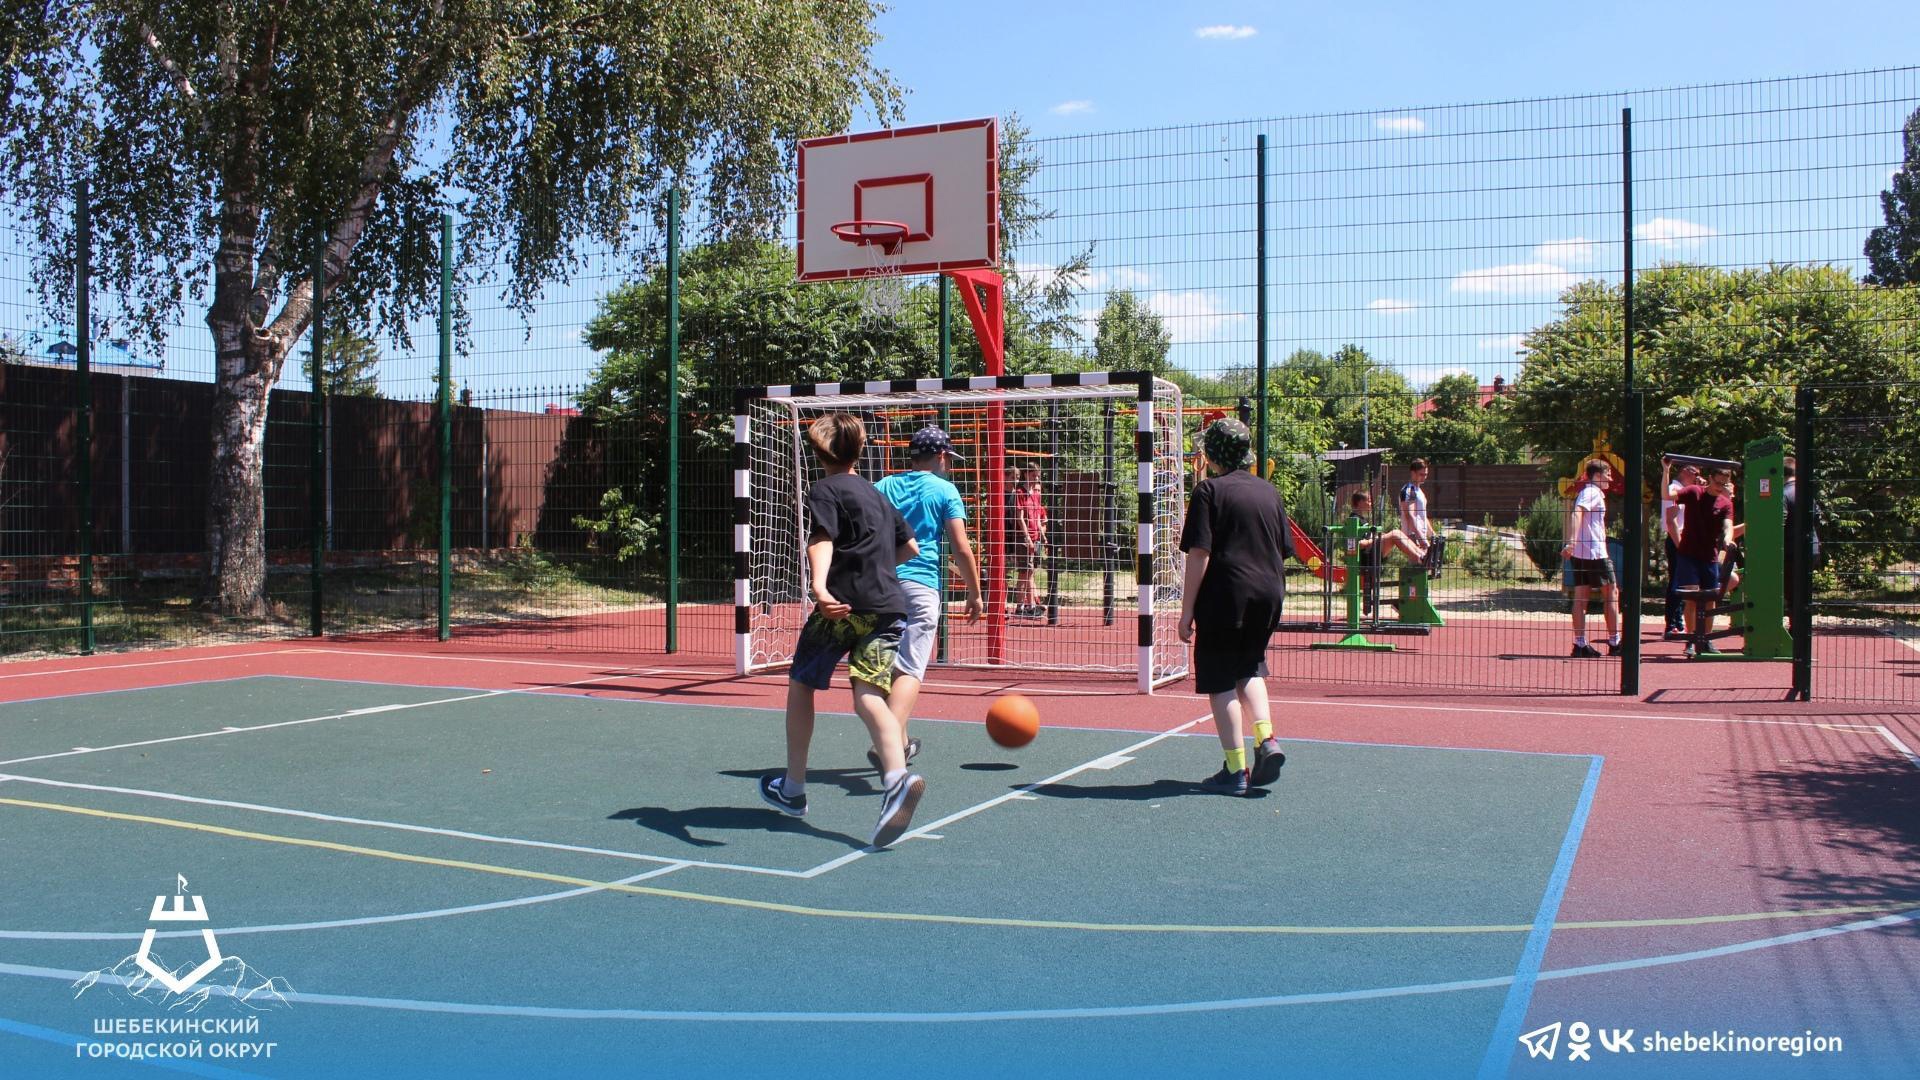 За последние два года в Шебекинском городском округе появились 52 новые спортивные площадки